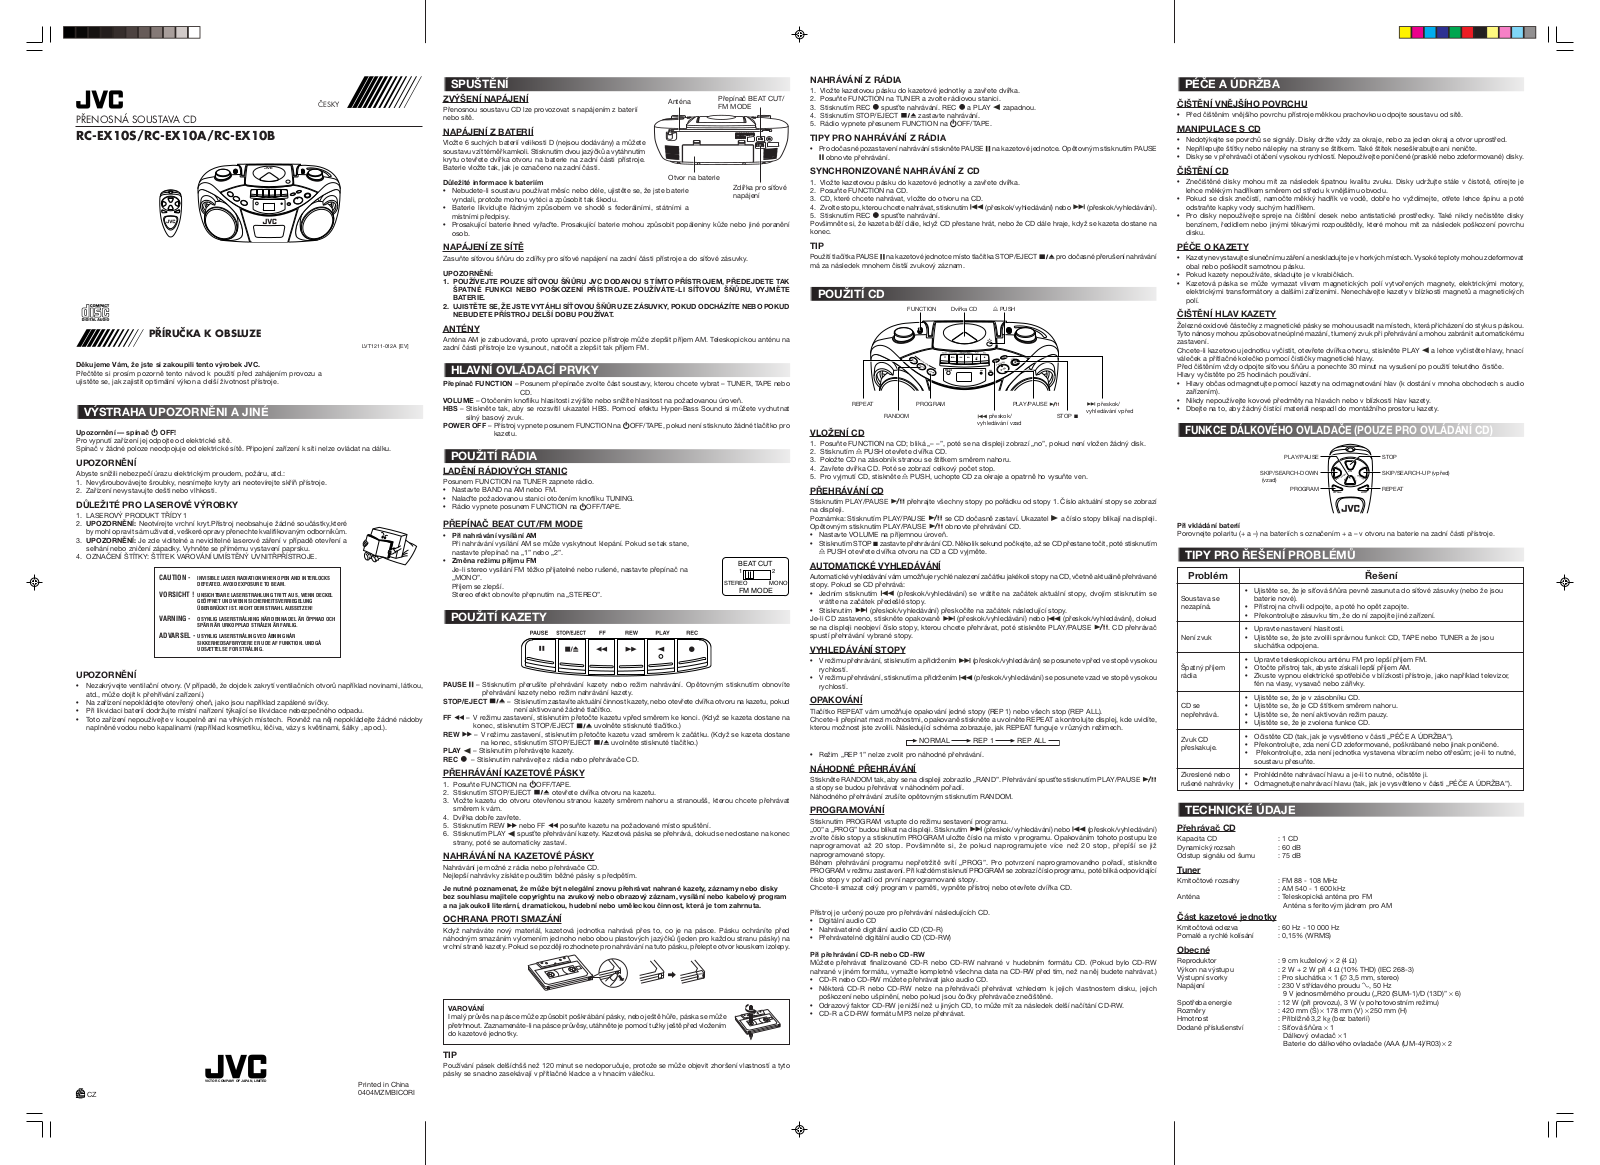 JVC RC-EX10 SL Manual